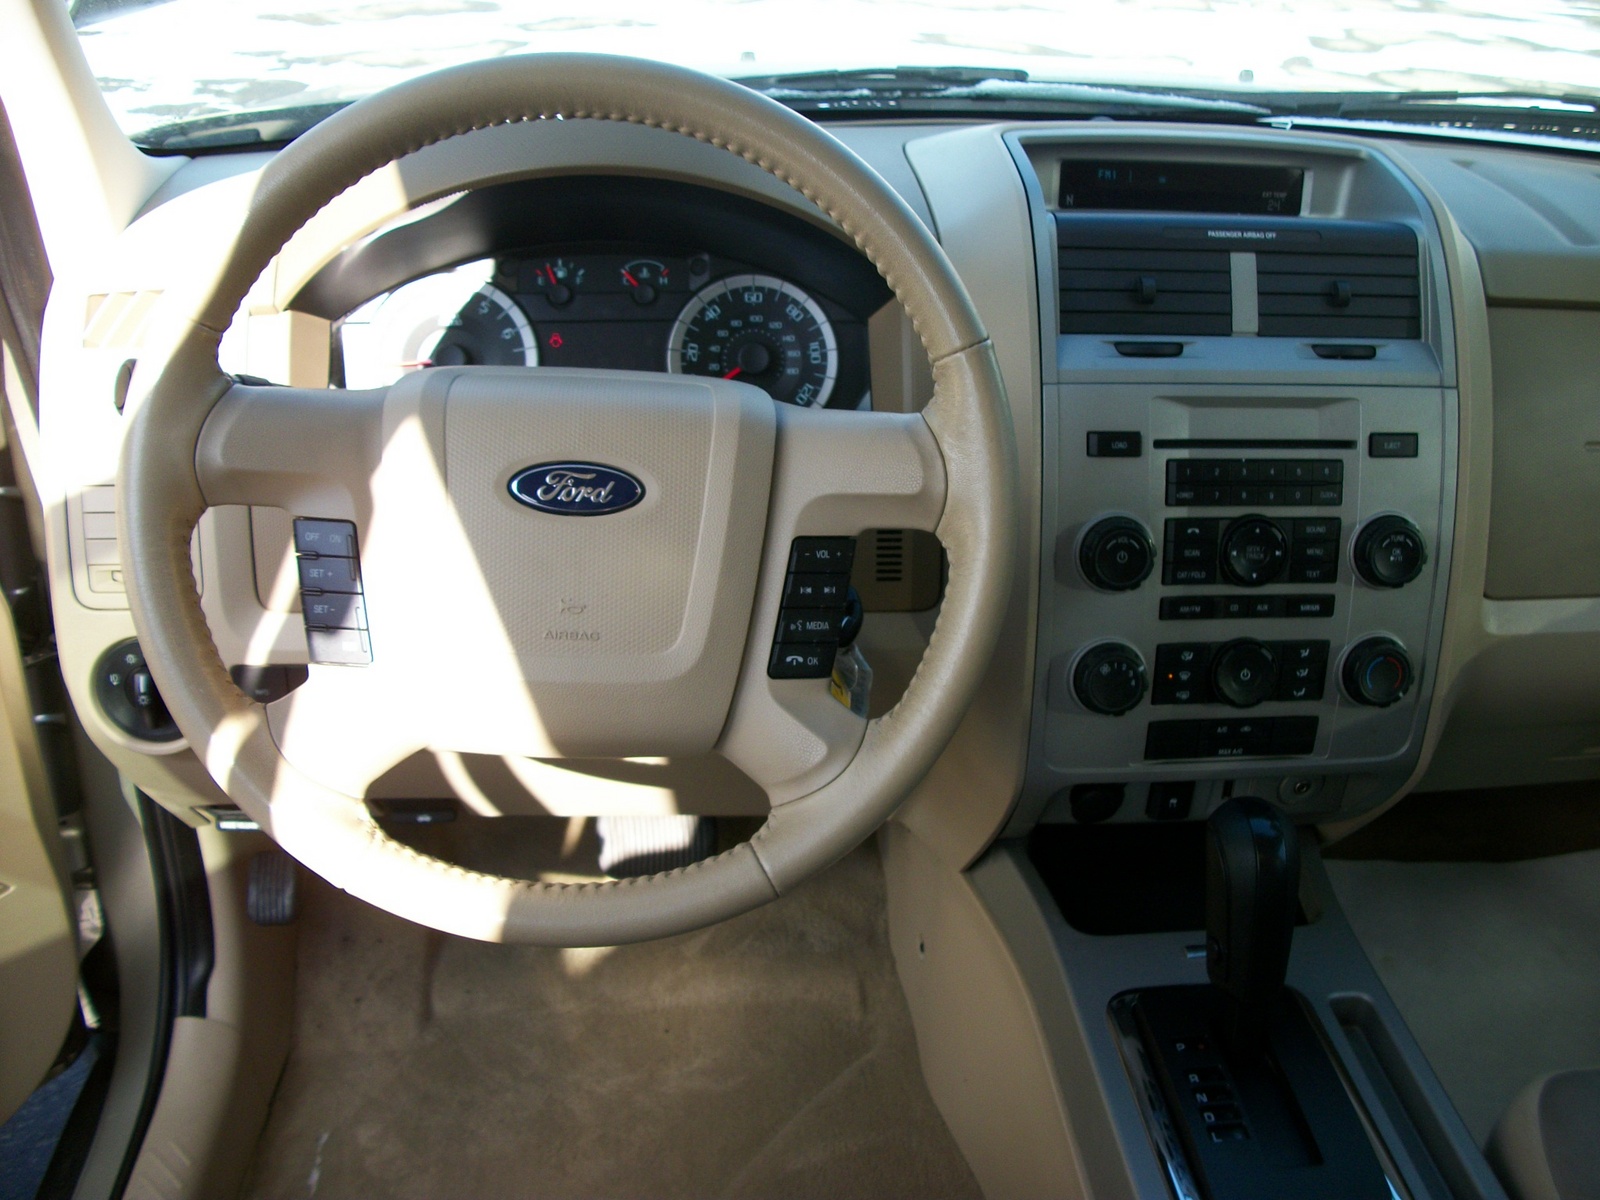 2010 Ford escape interior colors #6